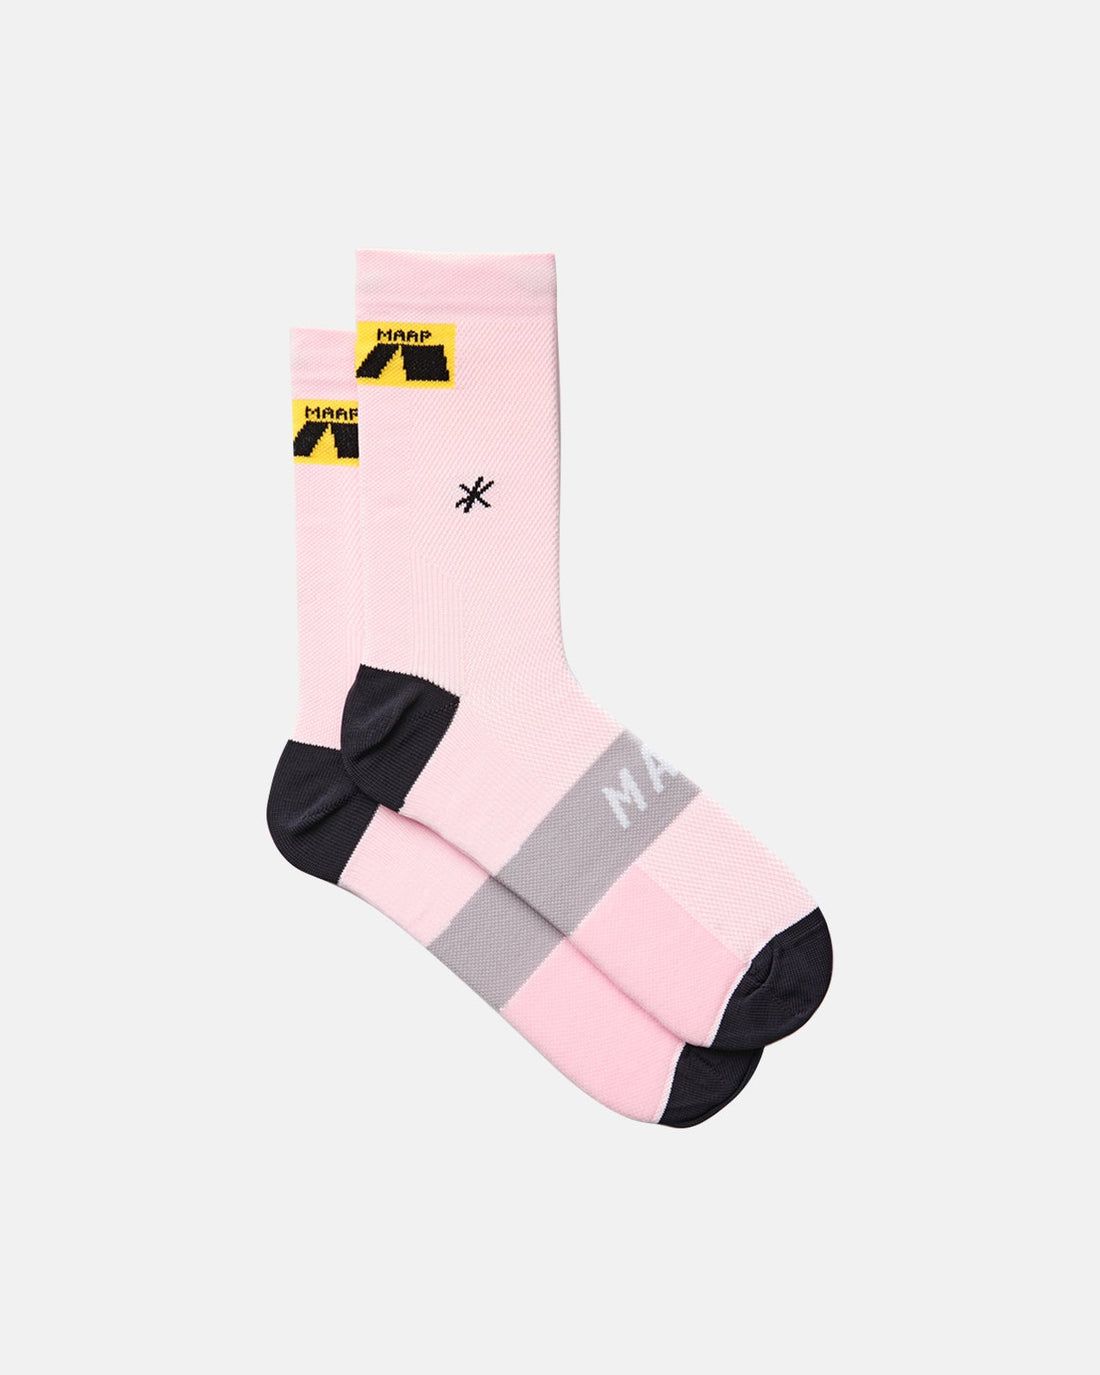 MAAP Axis Socks - Pale Pink